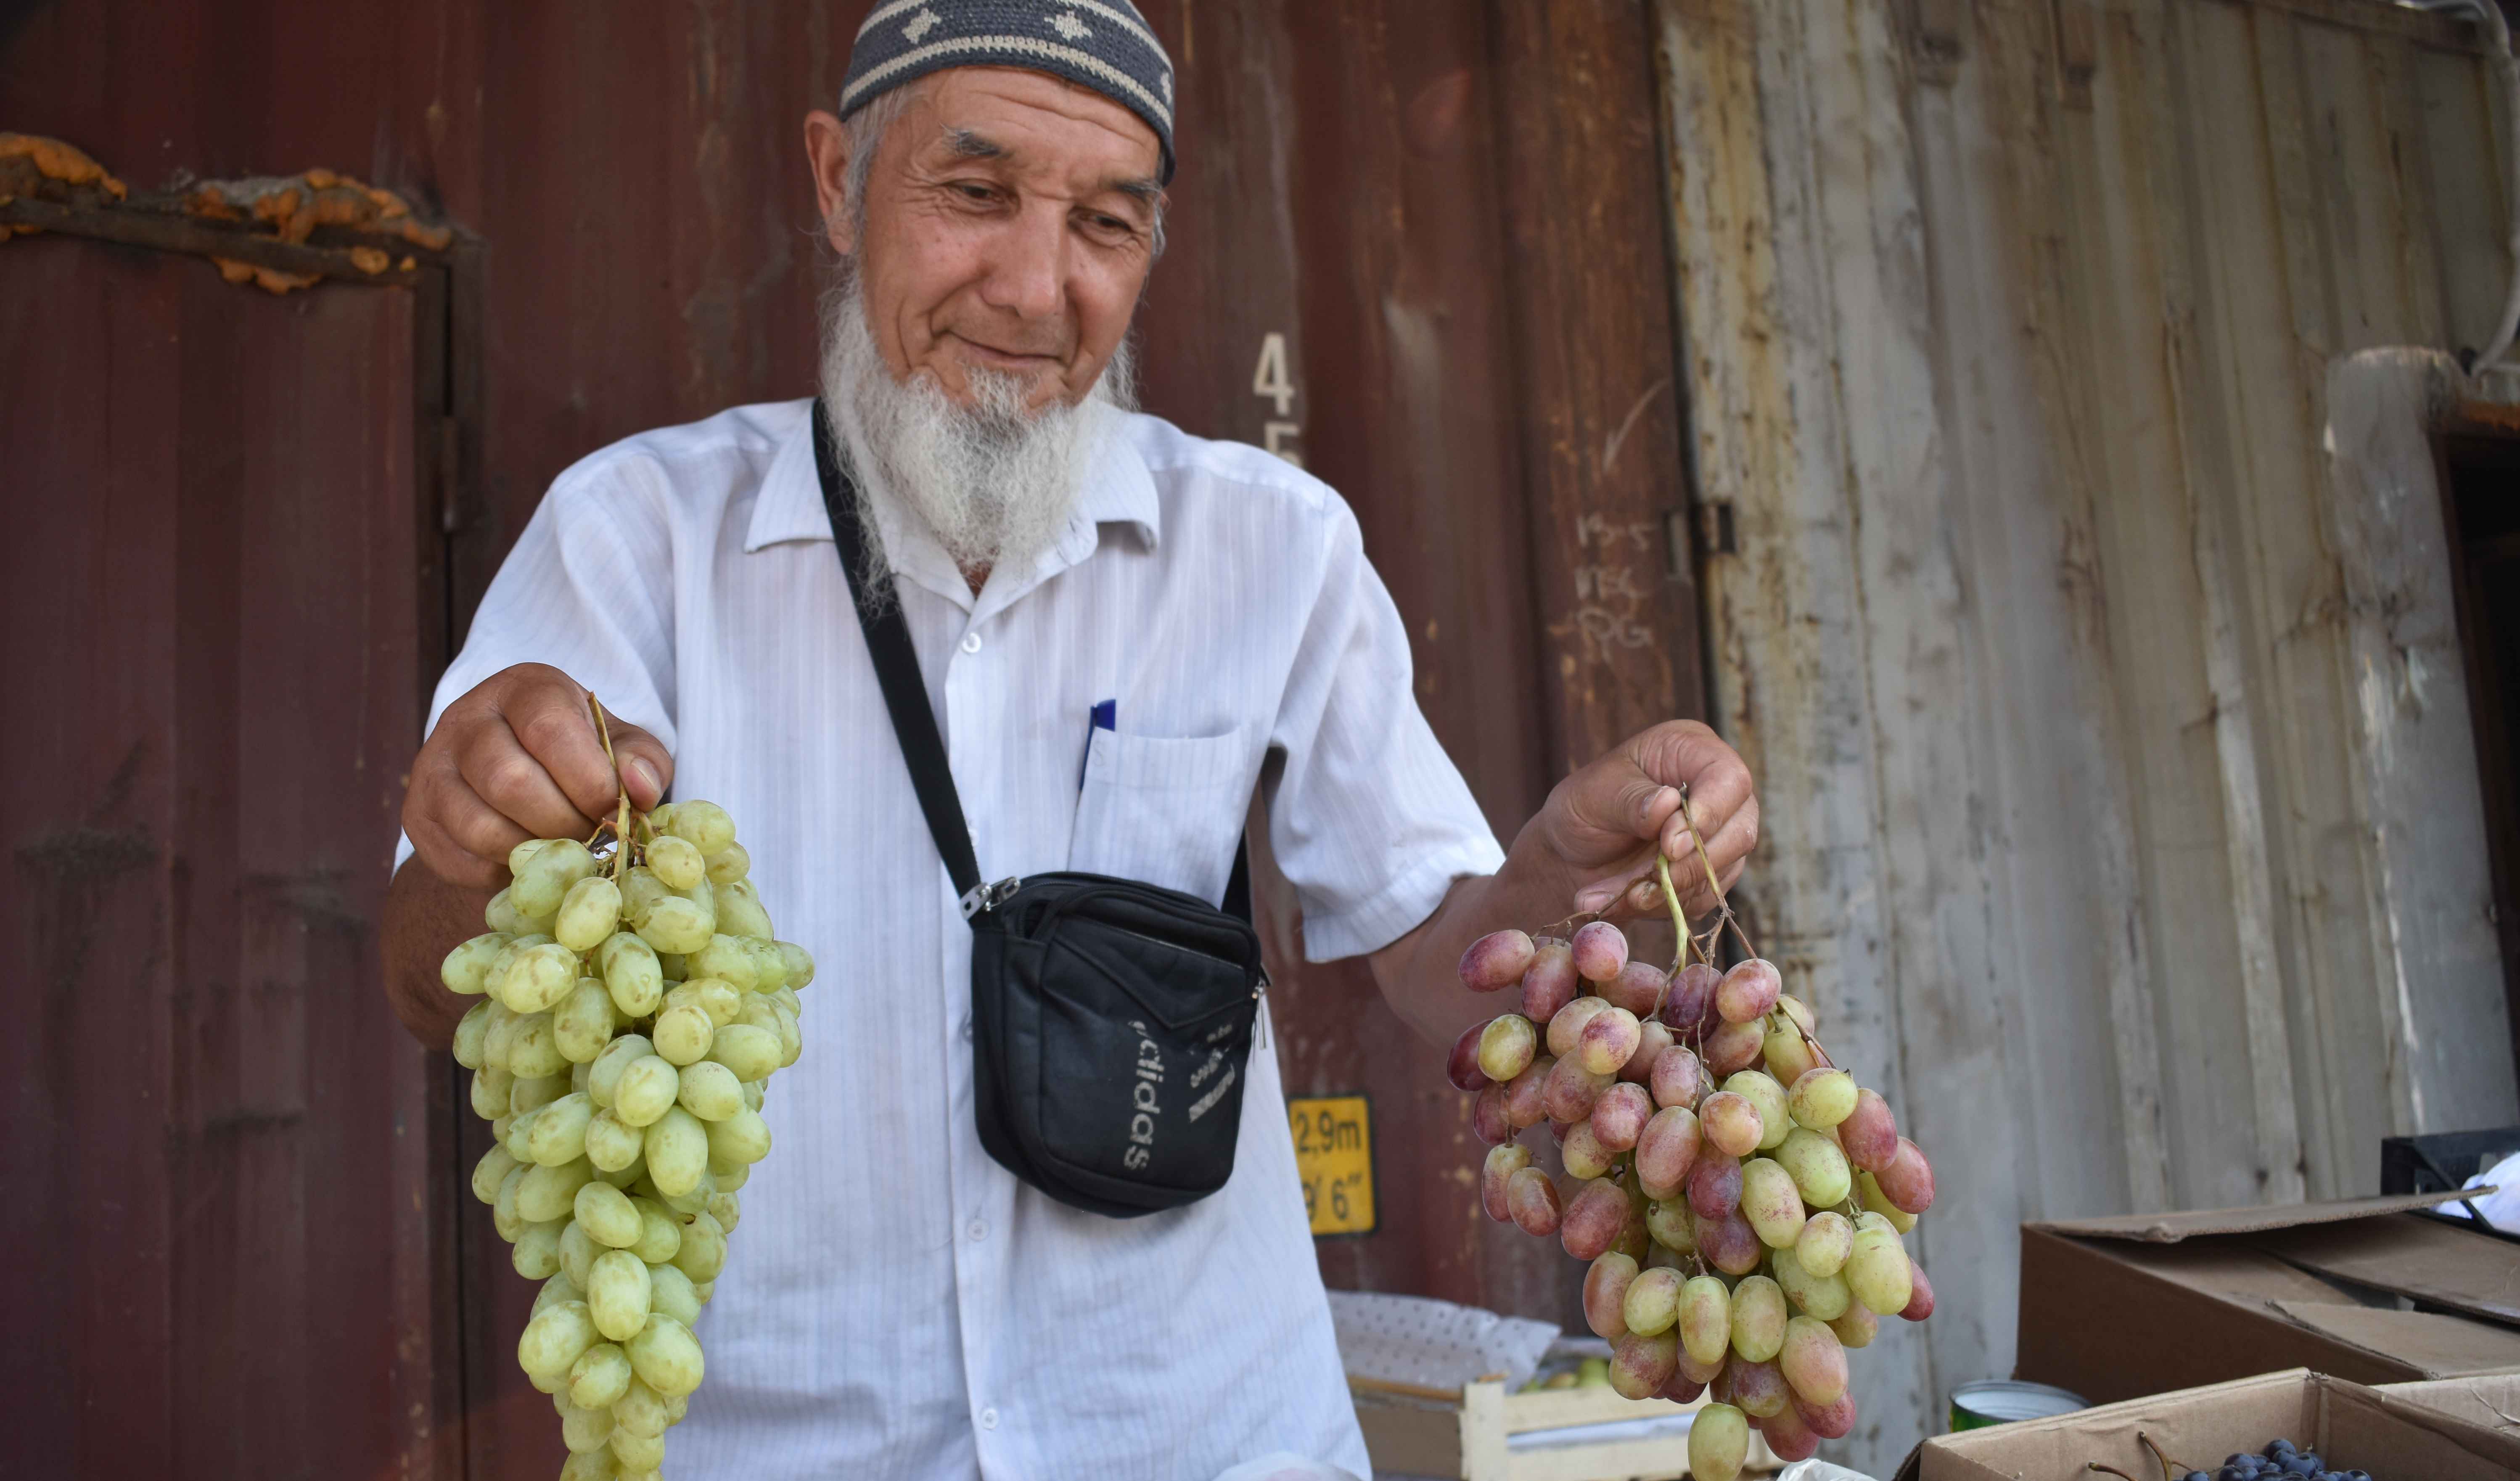 Базару нет! Аномальная жара и дефицит покупателей вызвали затишье на рынках Бишкека